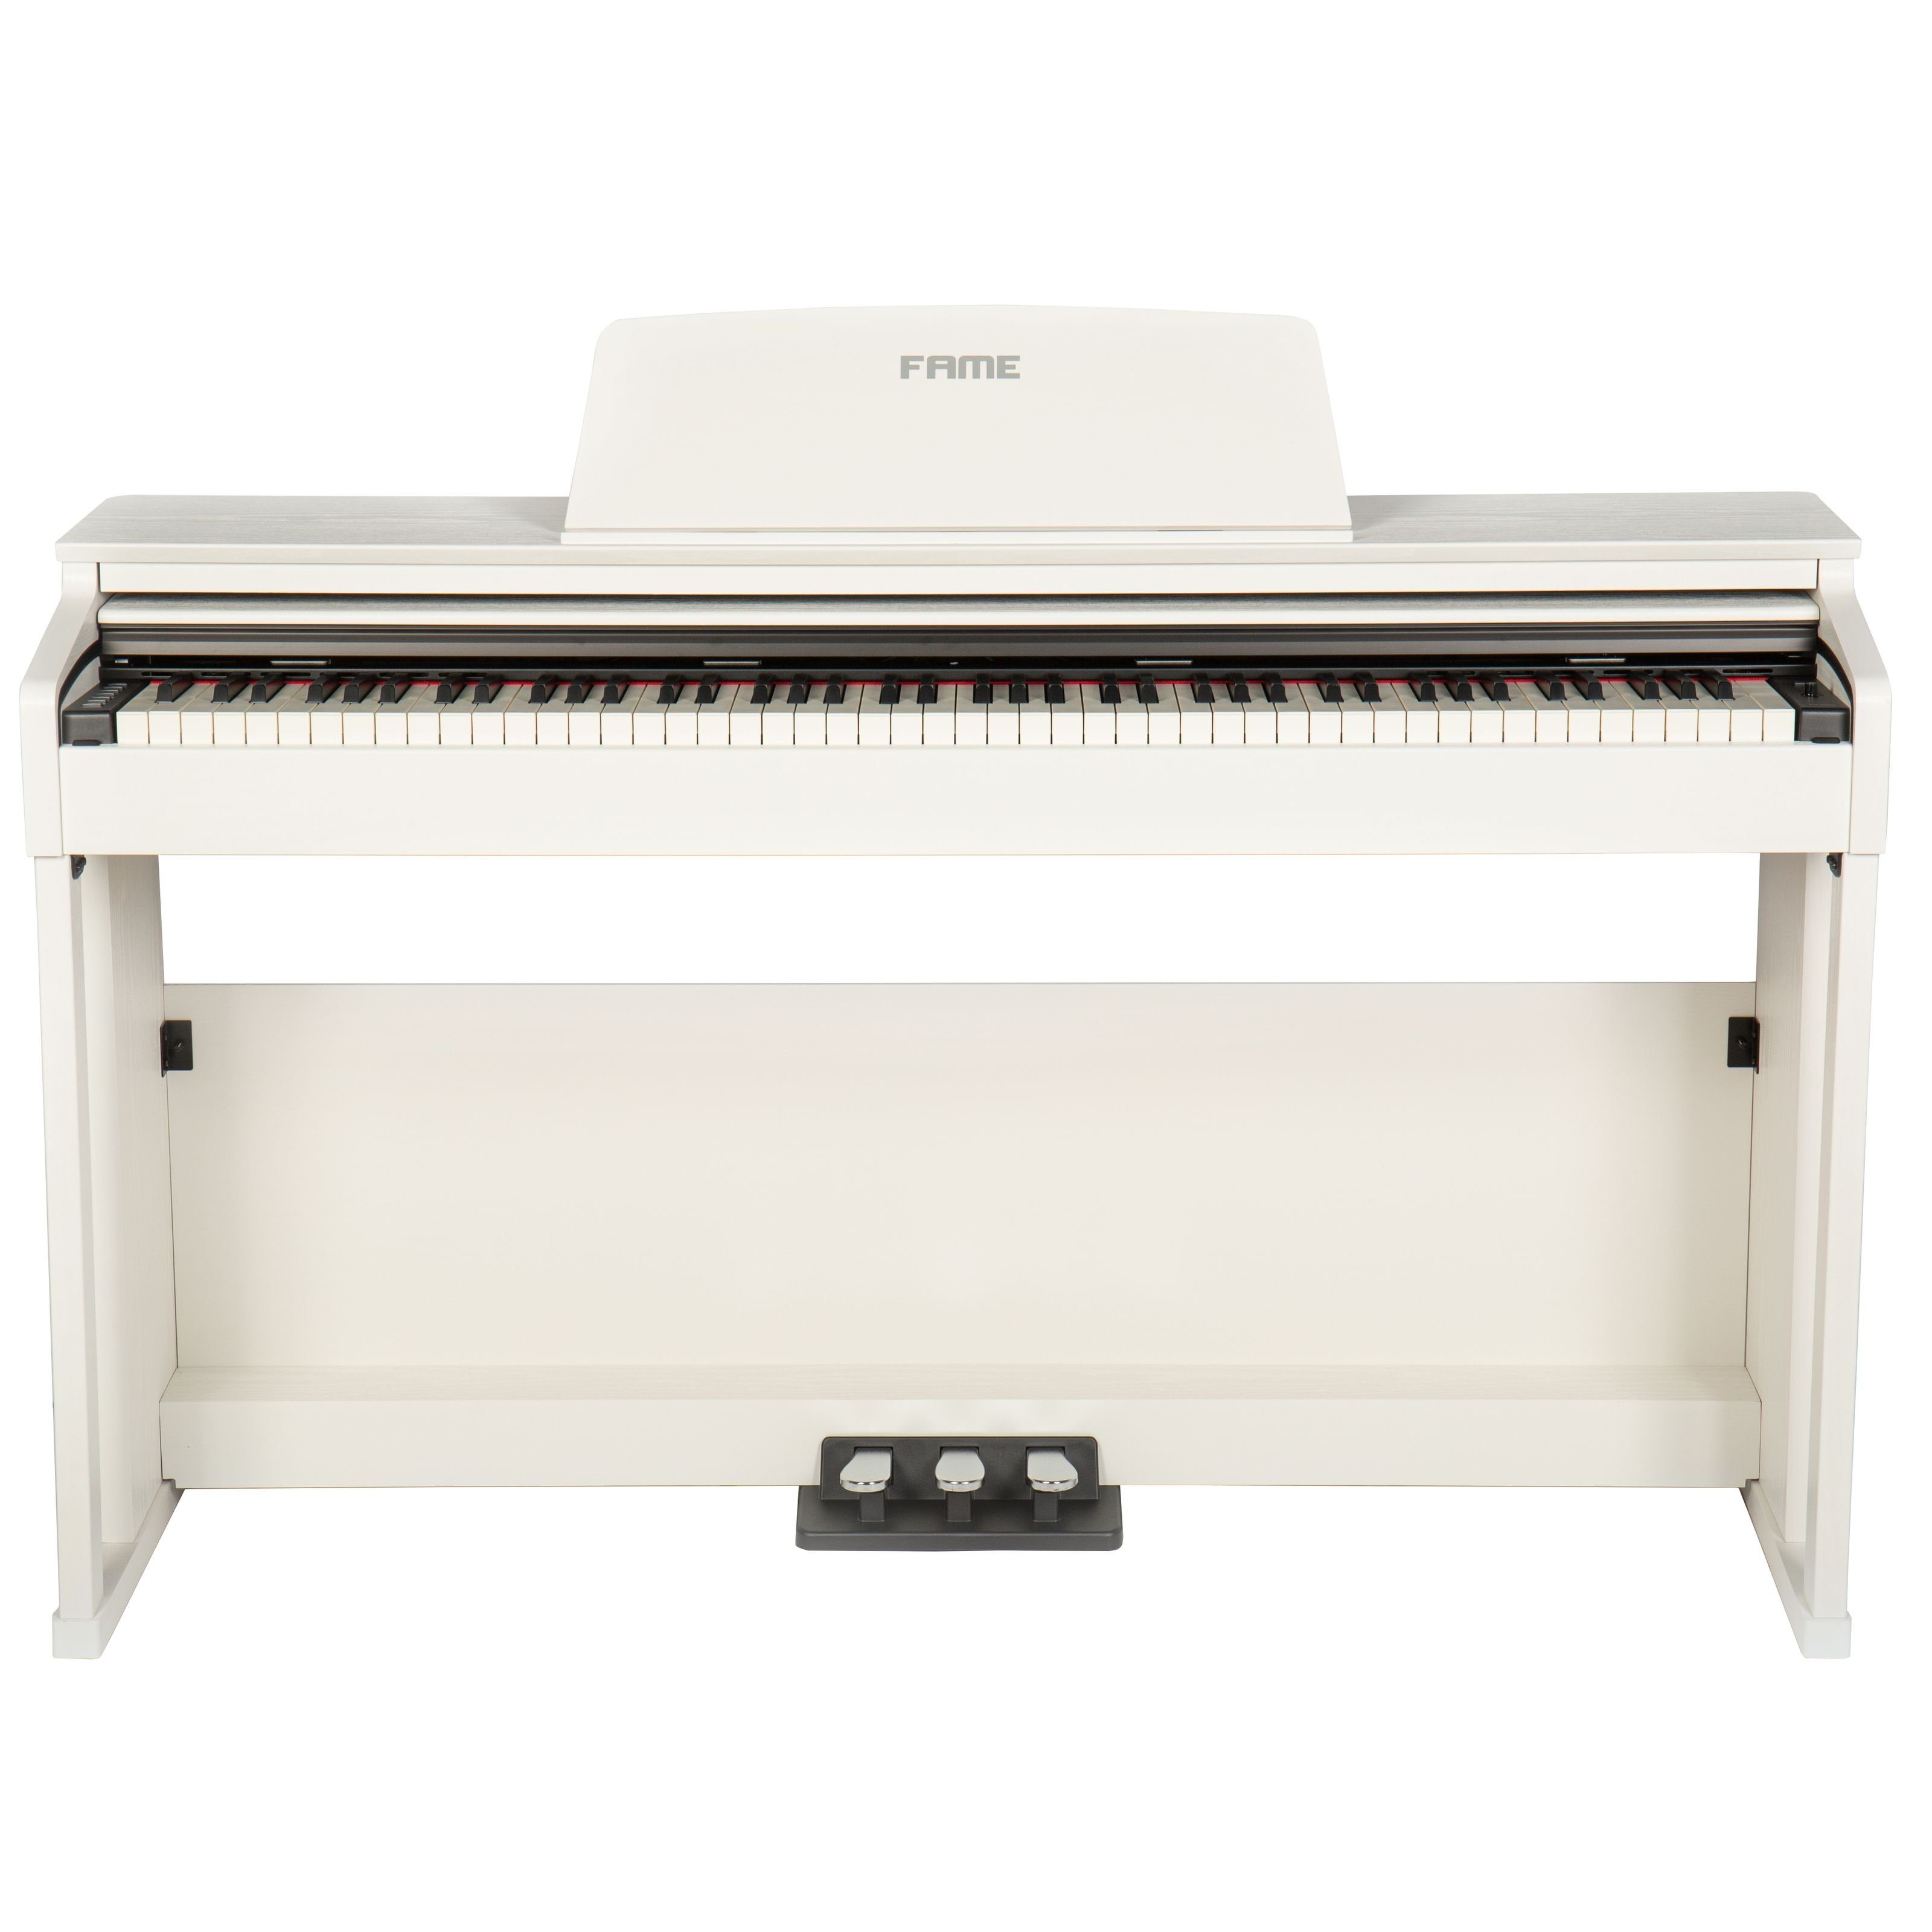 FAME Digitalpiano (DP-3000 E-Piano mit Hammermechanik, anschlagdynamischen 88 Tasten, voller Klavierklang, 20 Orchesterklangfarben, 128-fache Polyphonie, wertiges Gehäuse mit Deckel und Konsolen, Digital Piano, Digitalpianos, Homepianos), DP-3000 E-Piano, Hammermechanik, anschlagdynamische 88 Tasten